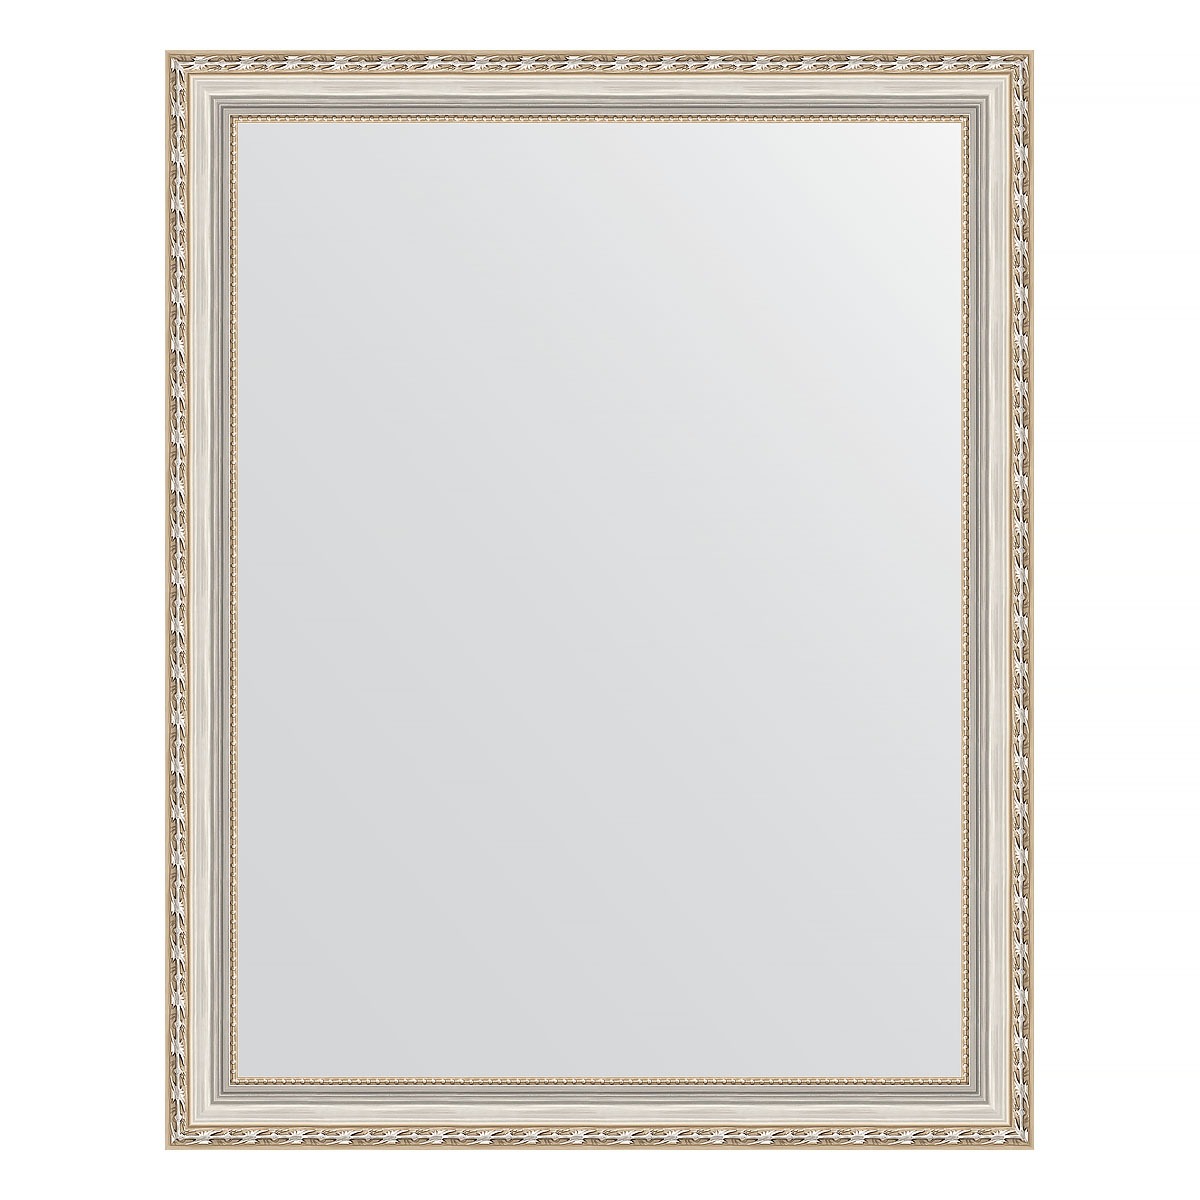 Зеркало в багетной раме Evoform версаль серебро 64 мм 75х95 см